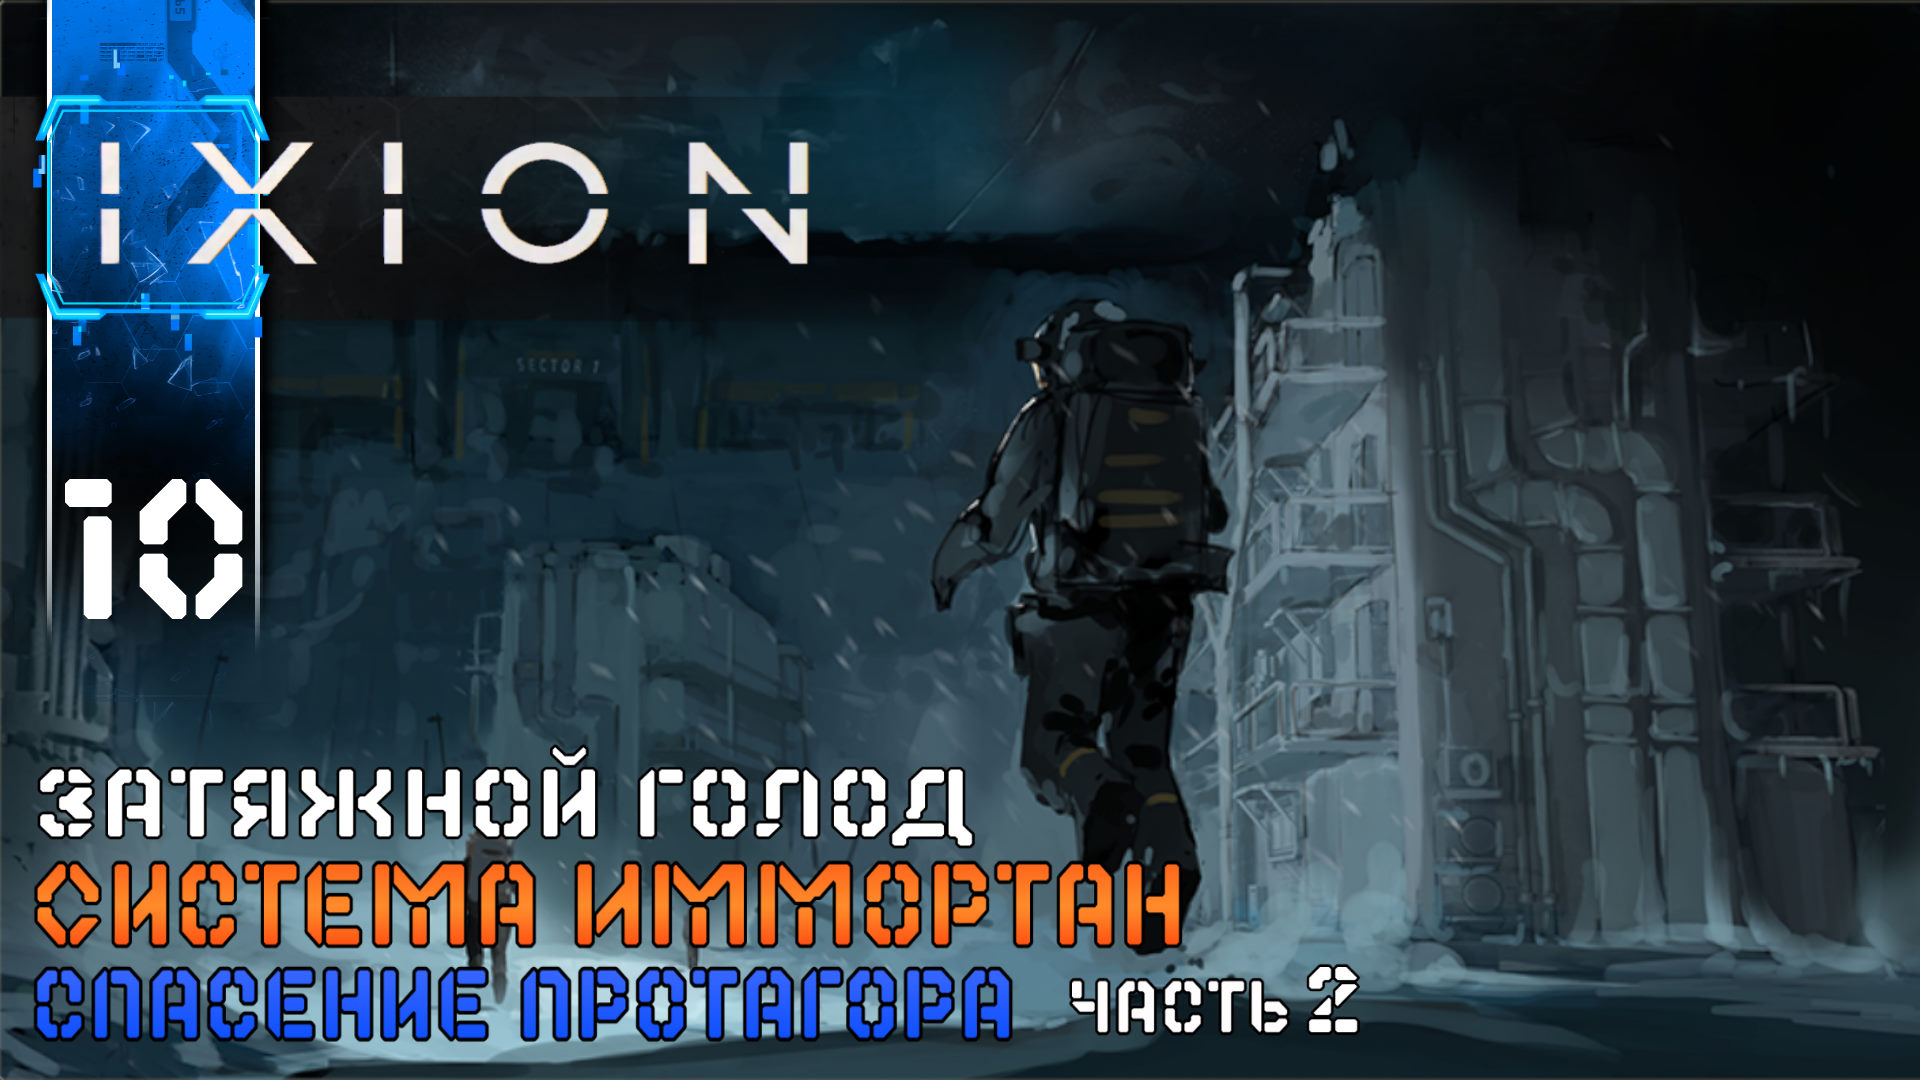 IXION (10) Спасение Протагора ч2 Полное Прохождение игры (ИКСИОН) на Русском Геймплей Стратегия